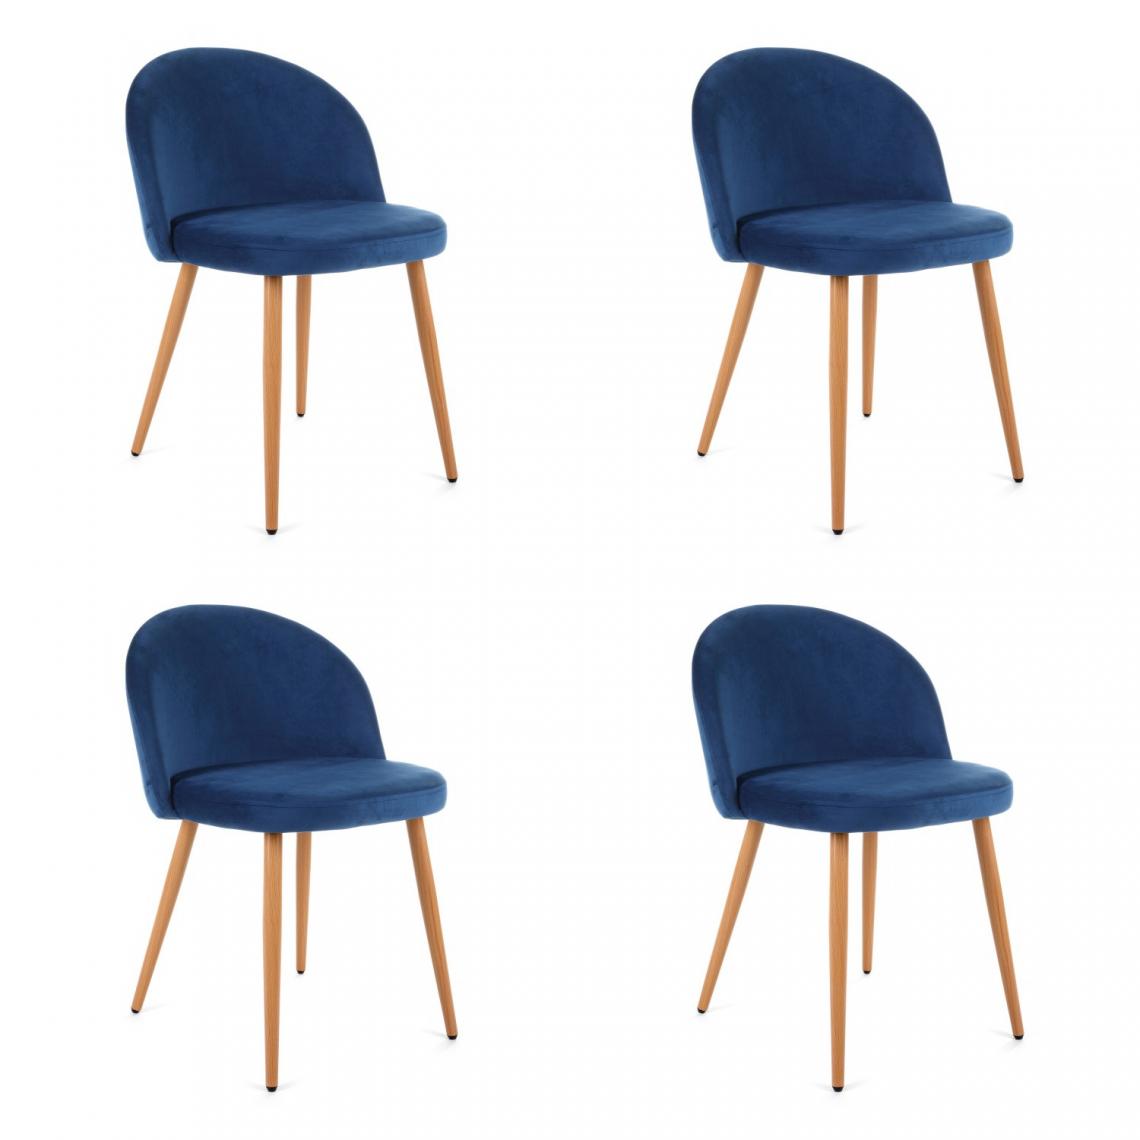 Hucoco - KARLI - Chaise rembourrée 4 pcs style moderne salon/salle à manger - 76x53x43 - Pieds en métal - Bleu - Chaises